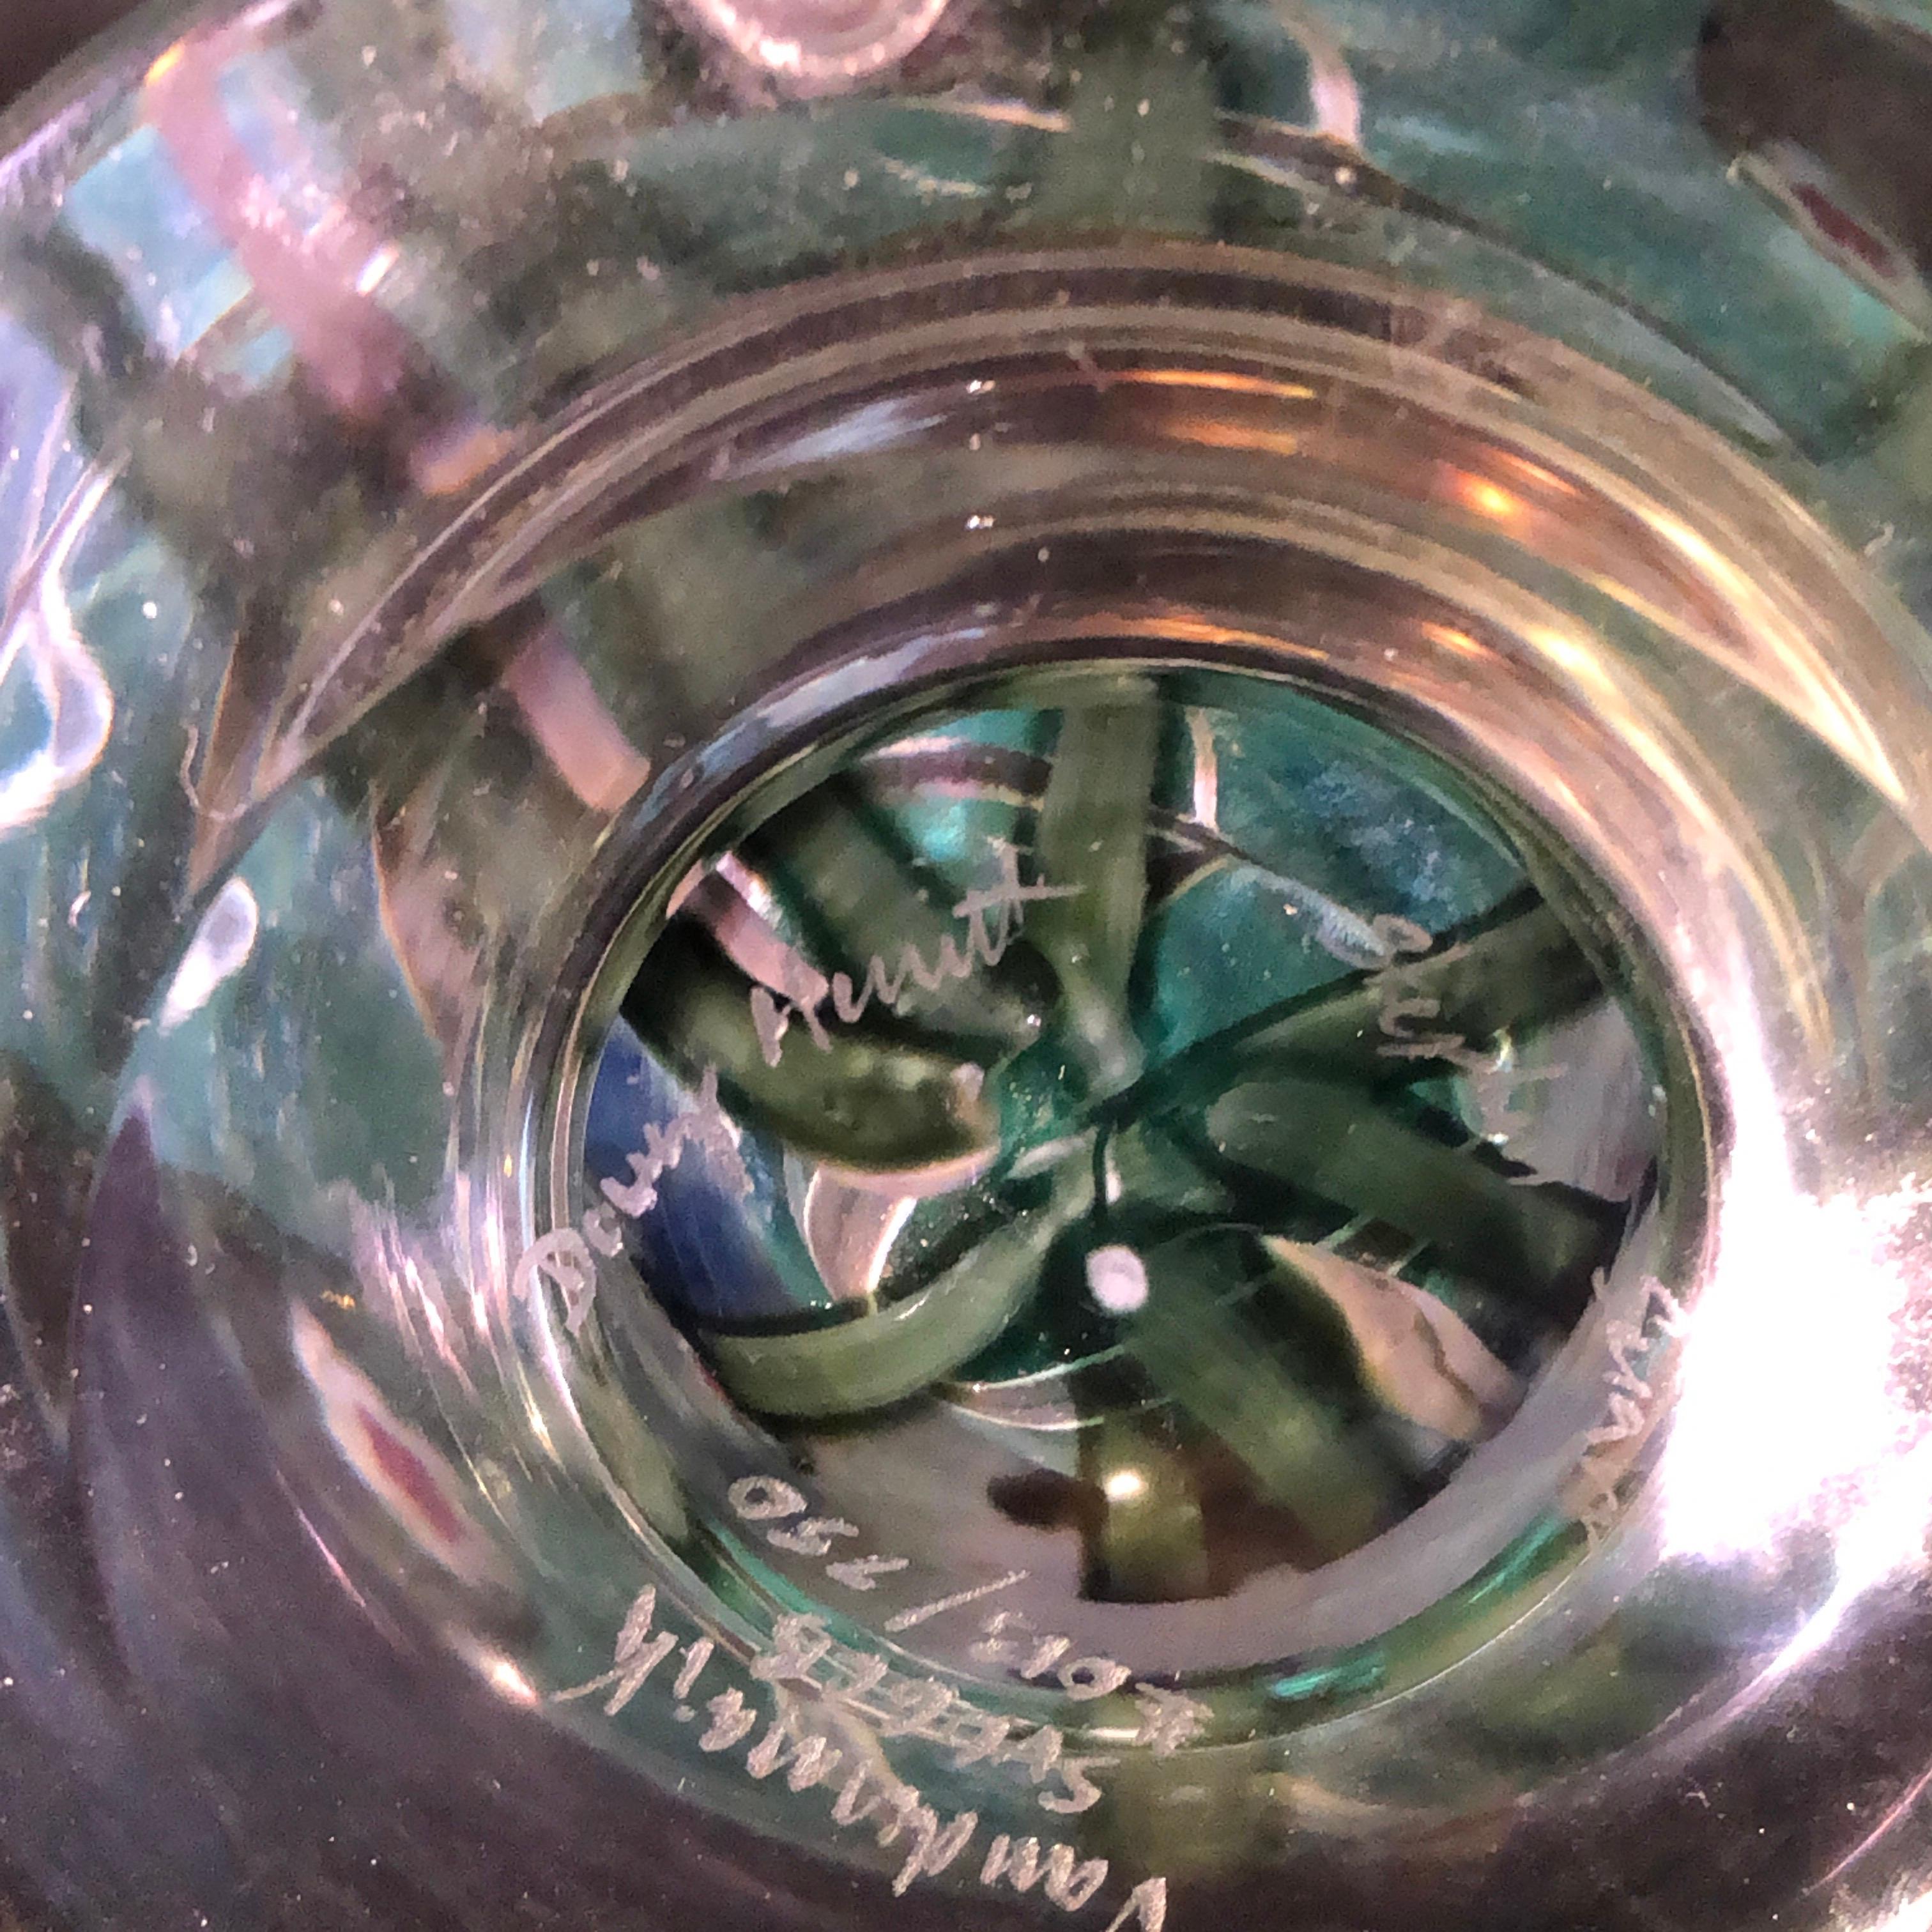 Late 20th Century Vandermark Art Glass Vase Signed by Vandermark, Doug Merritt and Stephen Smarr